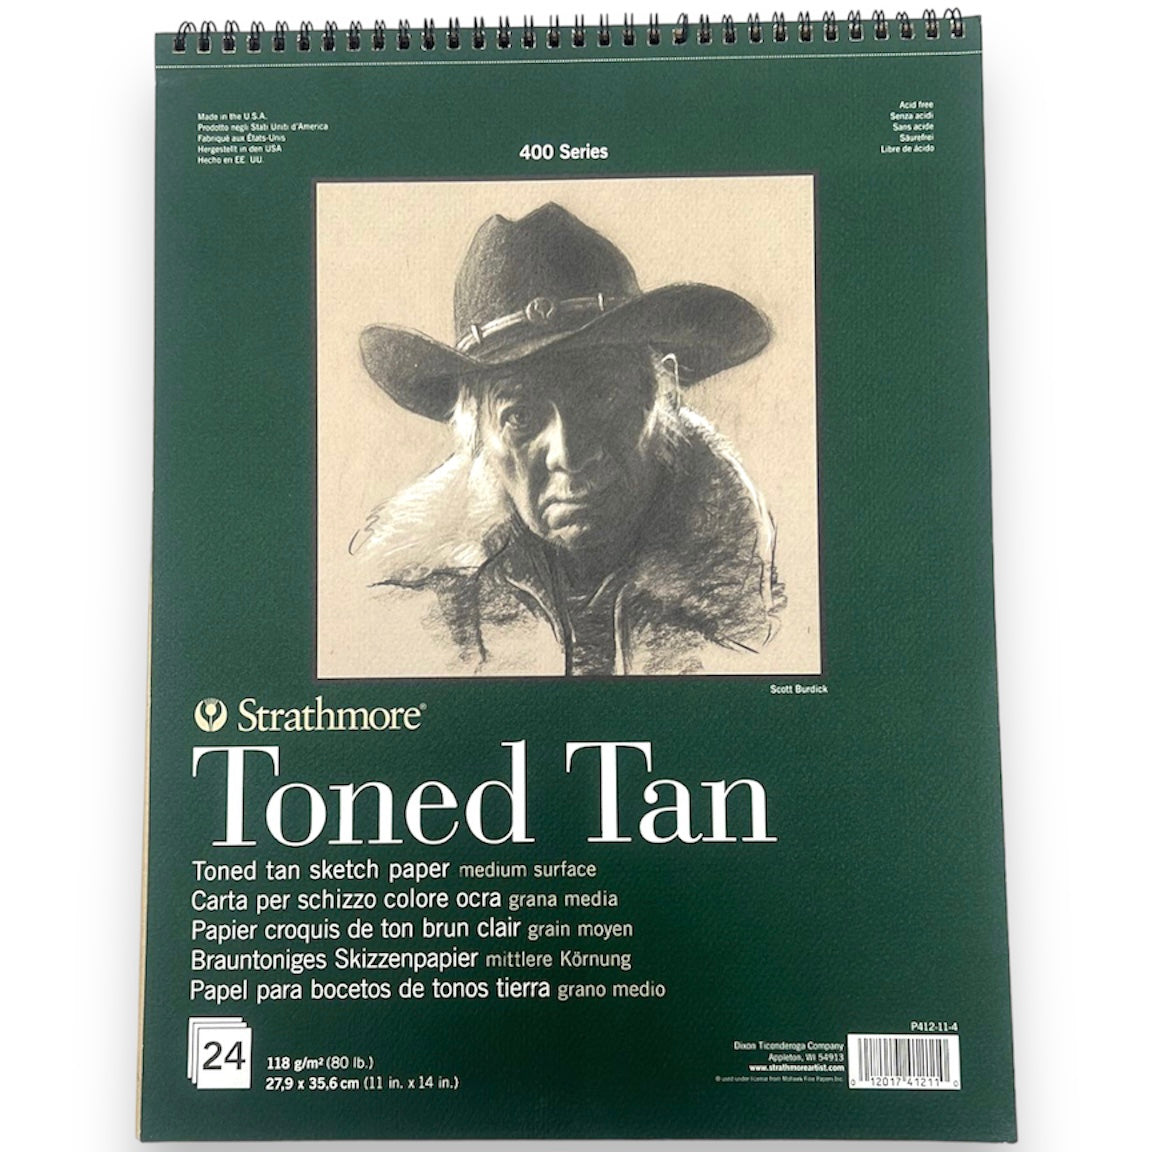 Strathmore Toned Tan Vertical Spiral Sketck Pad 11*14 inch || كراسة رسم ستراثمور تون تان سلك حجم ١١*١٤ 